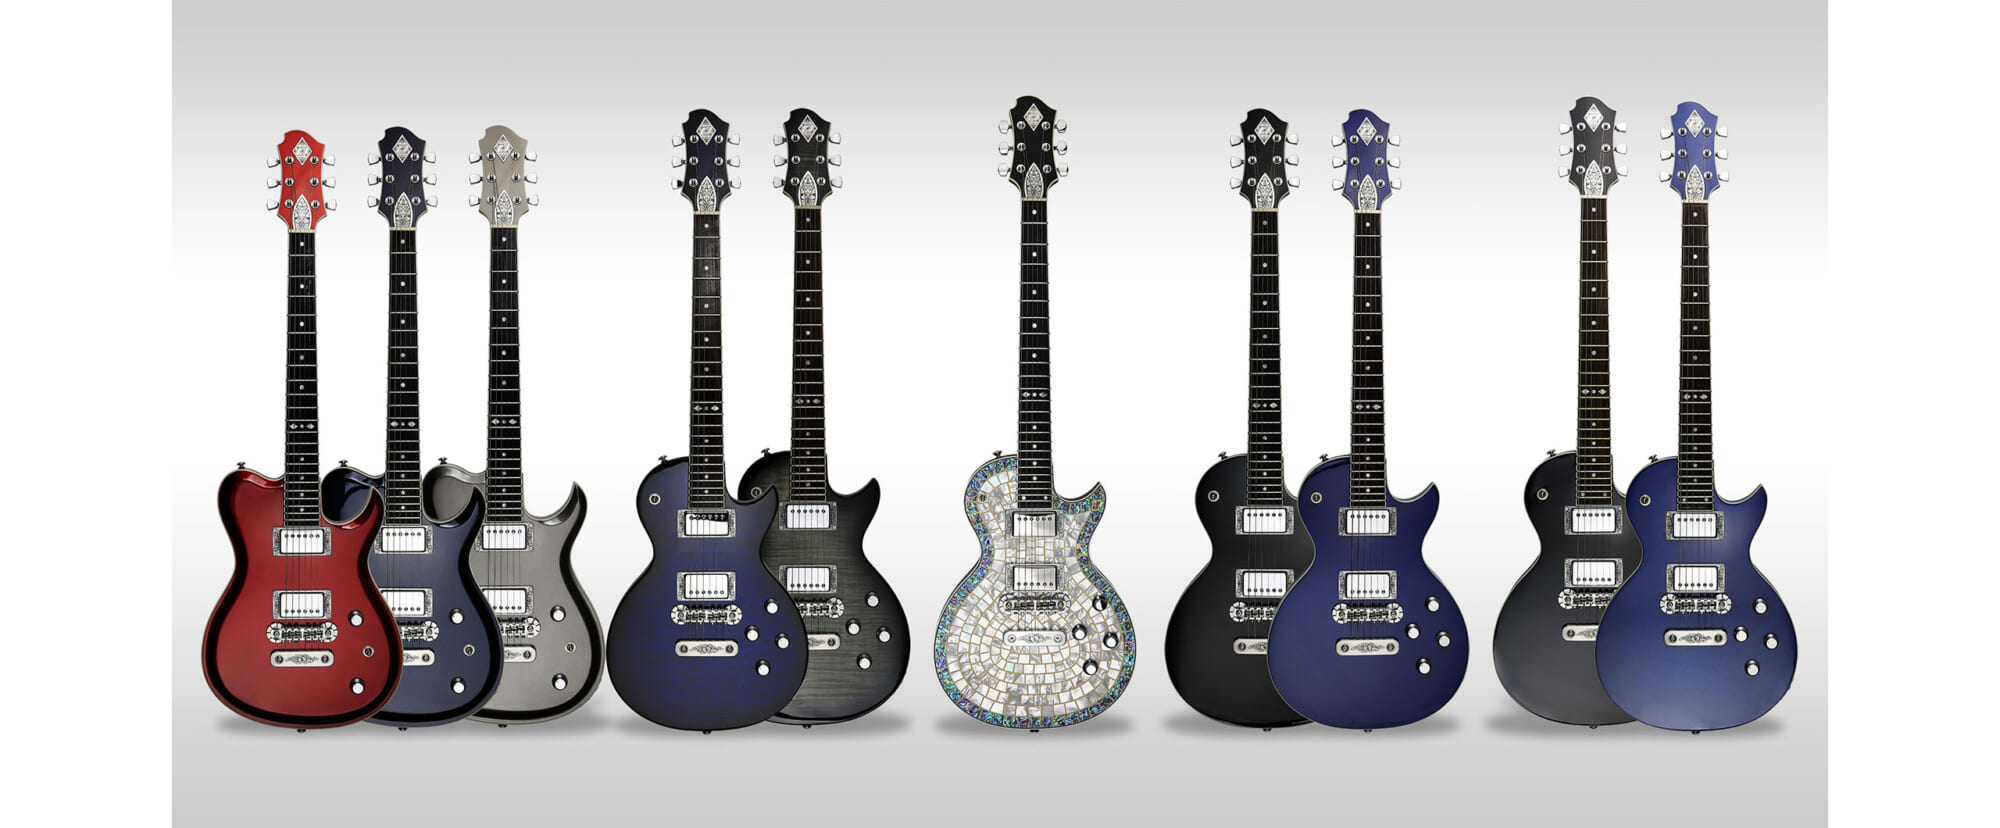 ゼマイティスより“USAプロデュース”によるギター5モデルが新登場